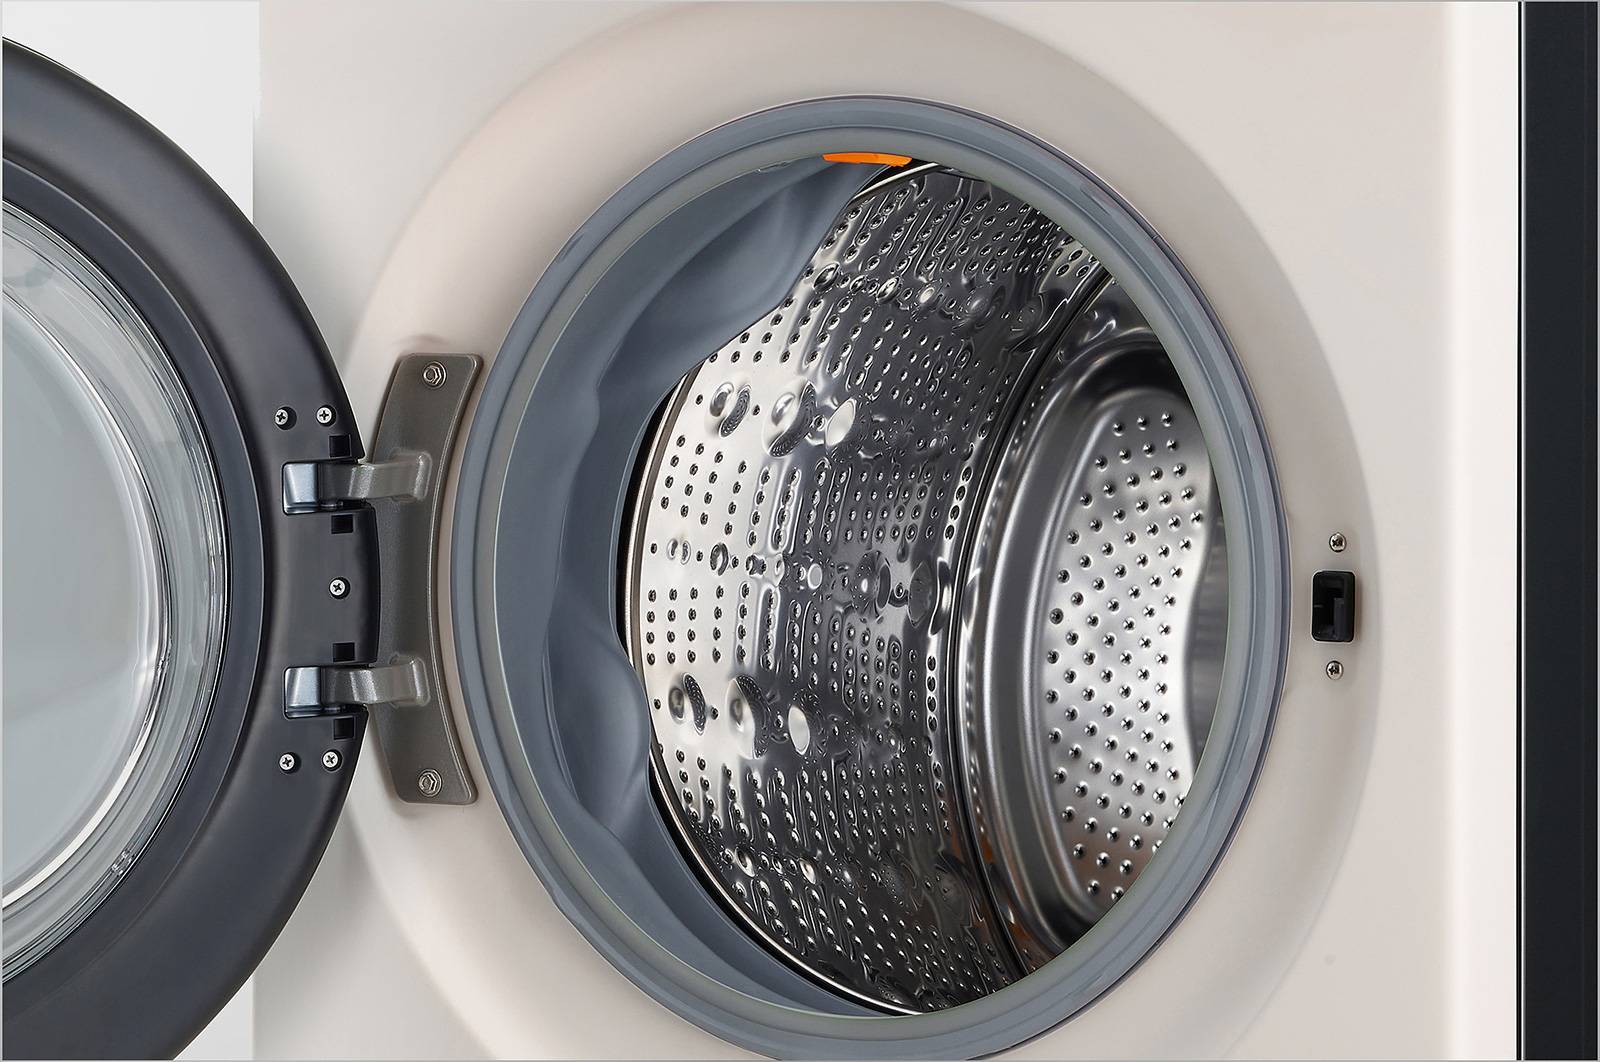 LG WashTower™ mang đến giải pháp chăm sóc quần áo vượt tầm mong đợi - Ảnh 3.